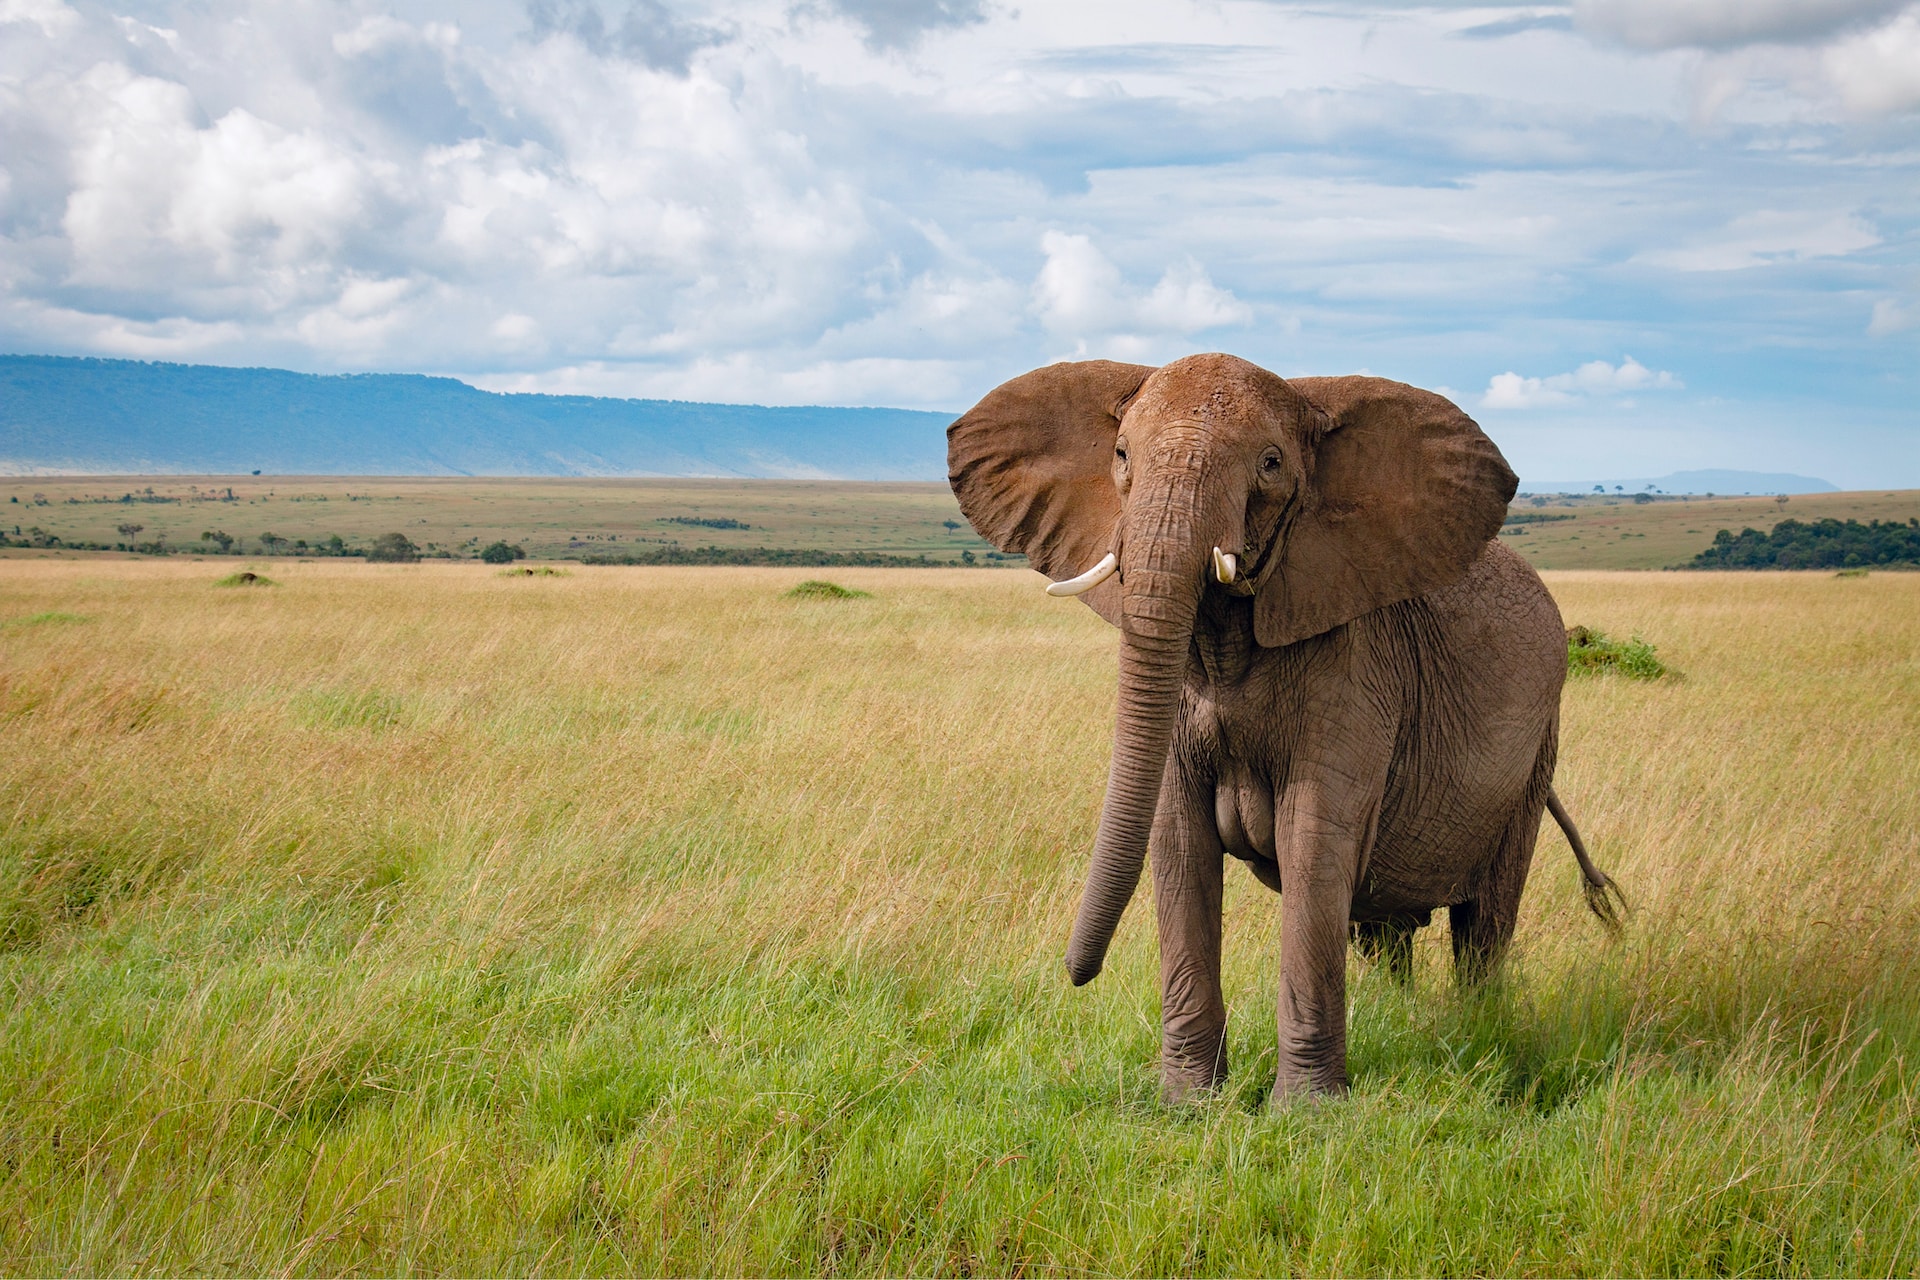 रोचक तथ्य हाथियों के संरक्षण के बारे में| Elephants in Peril: Conservation Efforts and Hope in Hindi